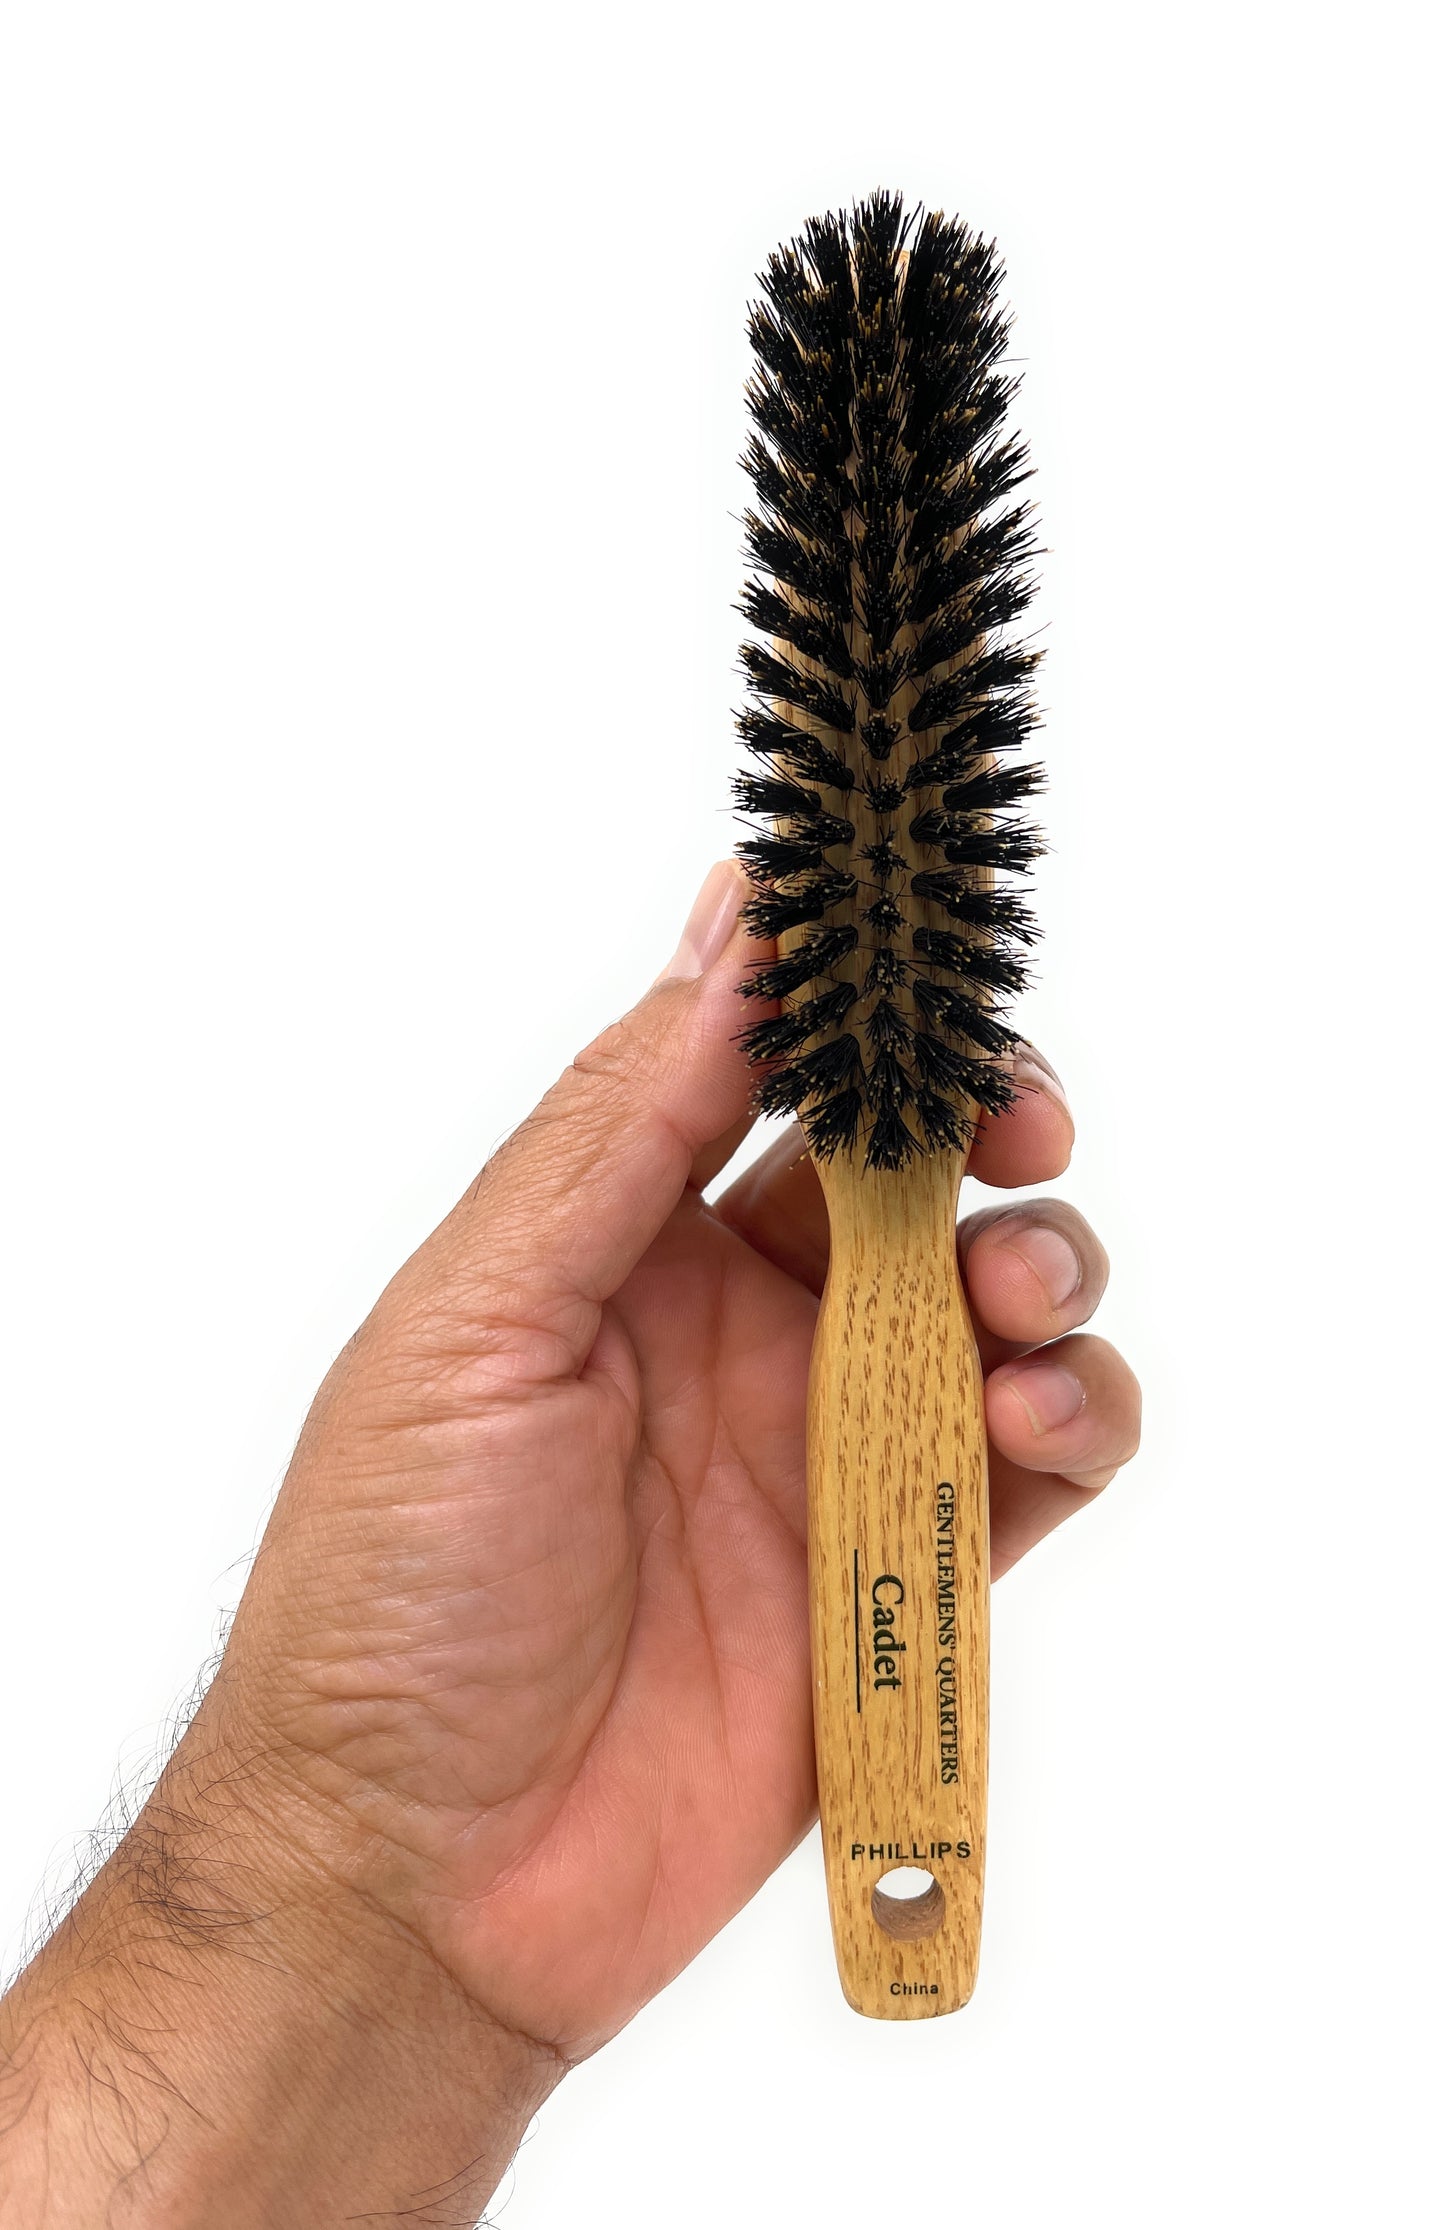 Phillips Brush Gentlemens’ Quarters Cadet 5 Row Narrow Styler Boar Bristle Hair Brush for Men Wood